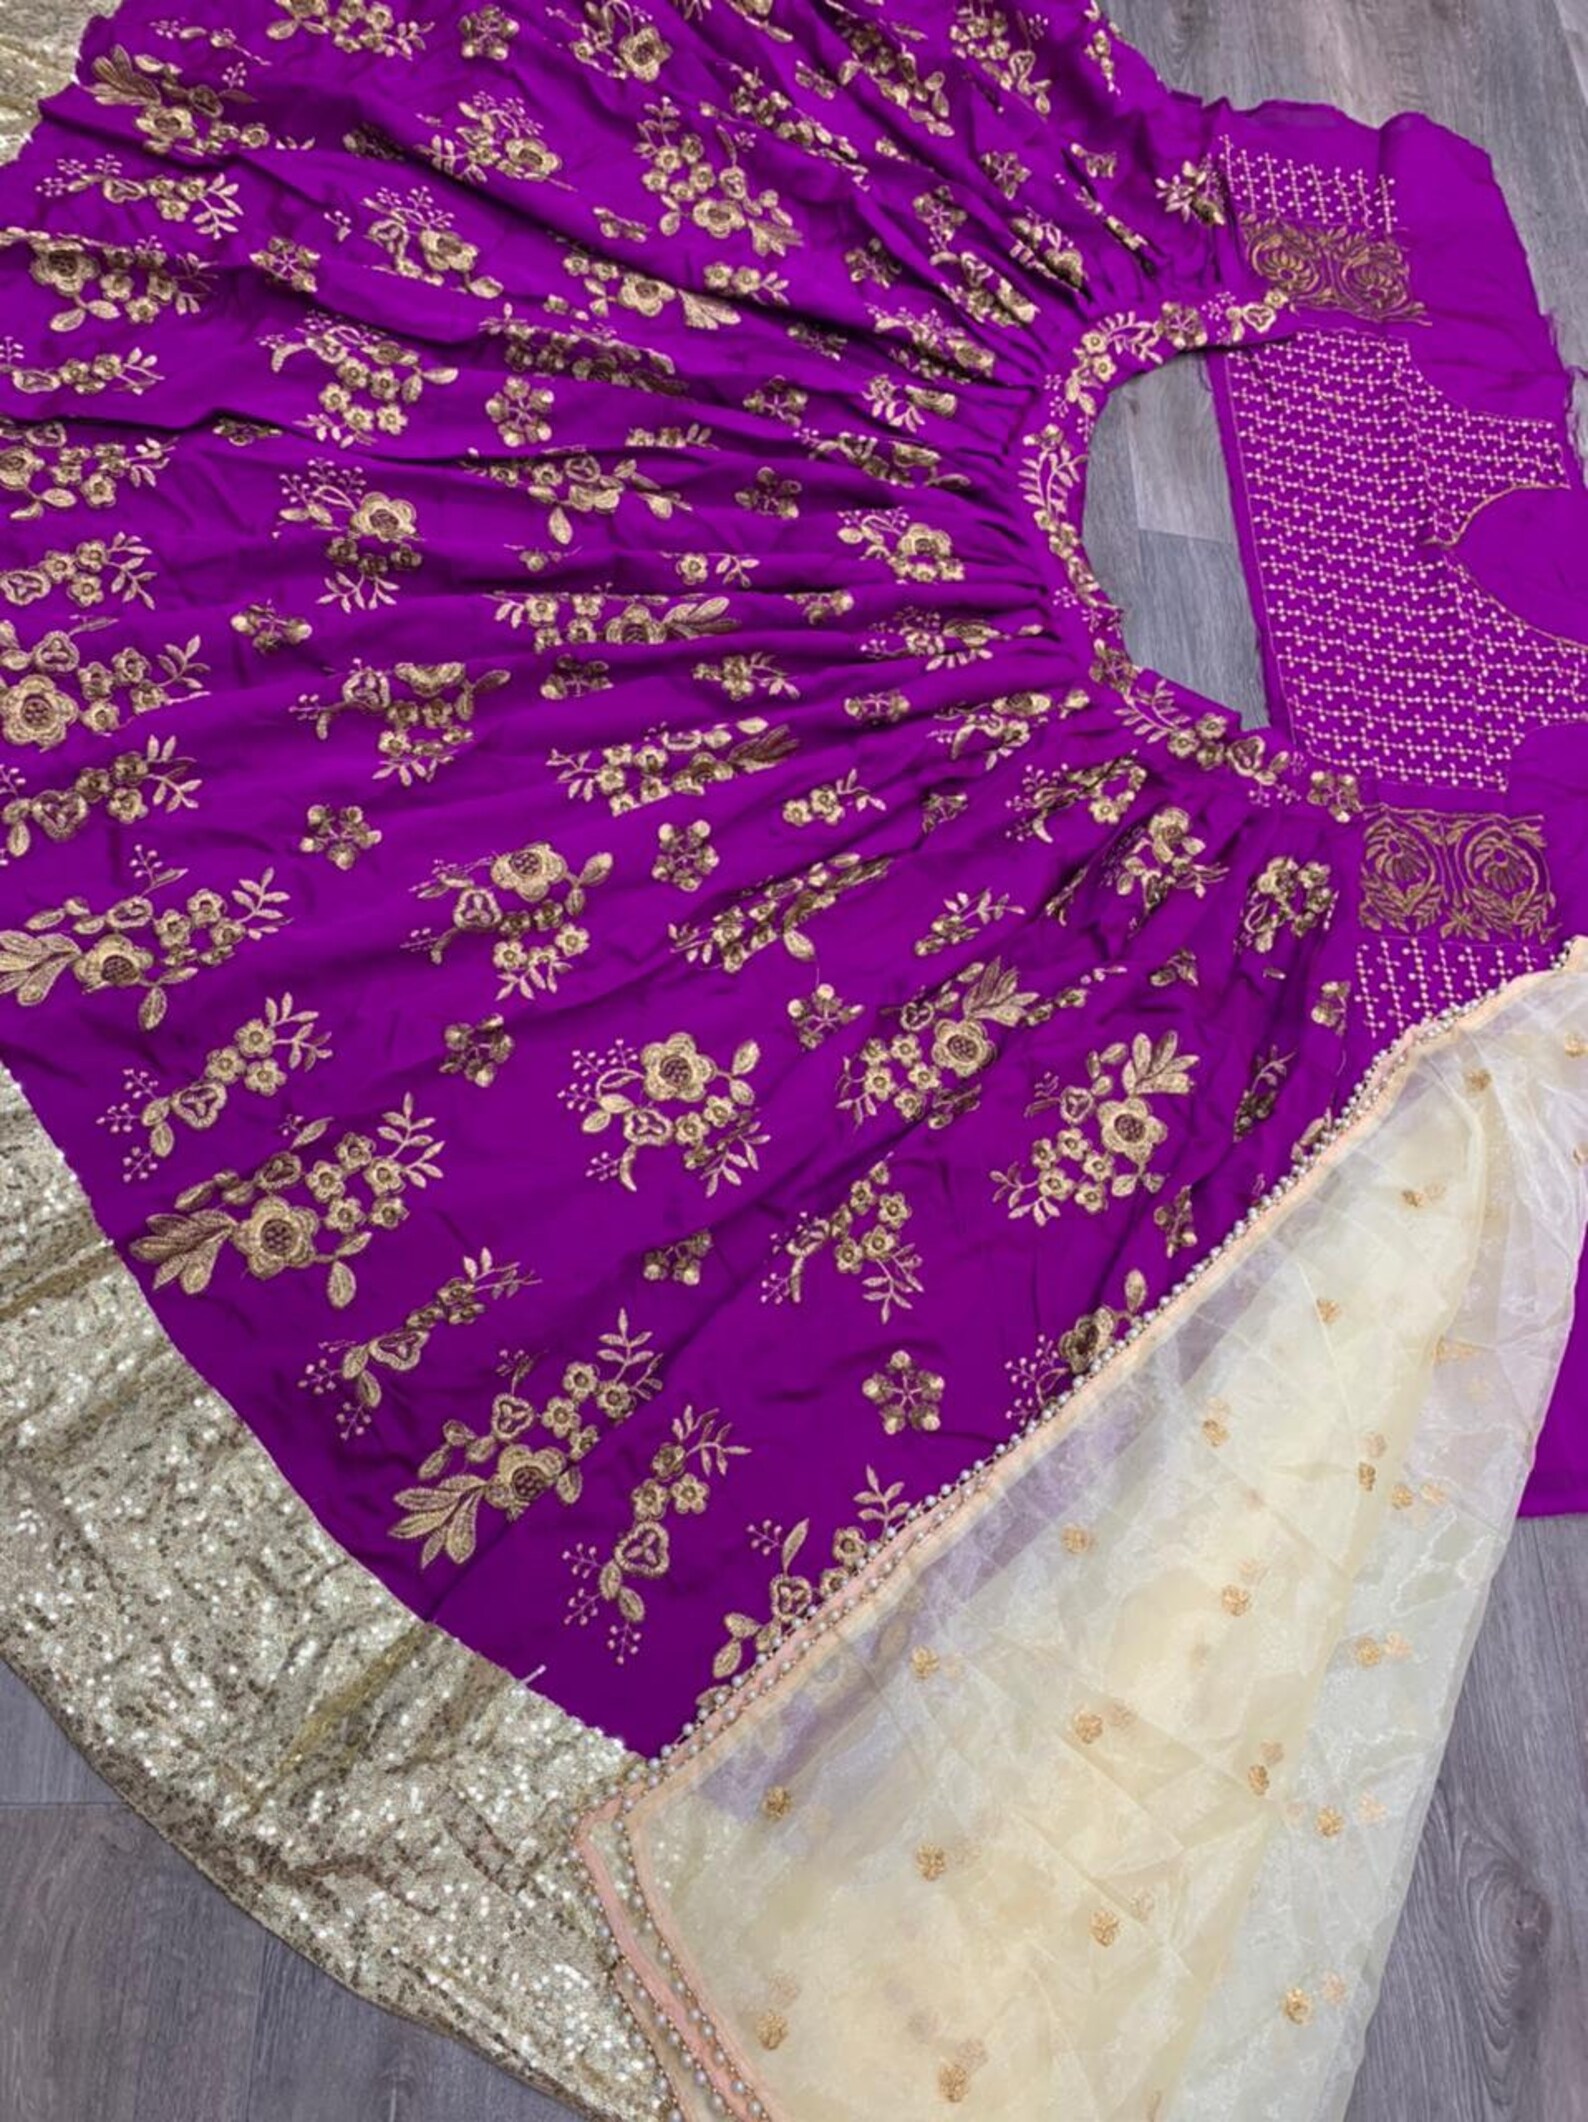 SABYASACHI wedding lehenga choli with heavy embroidery work | Etsy